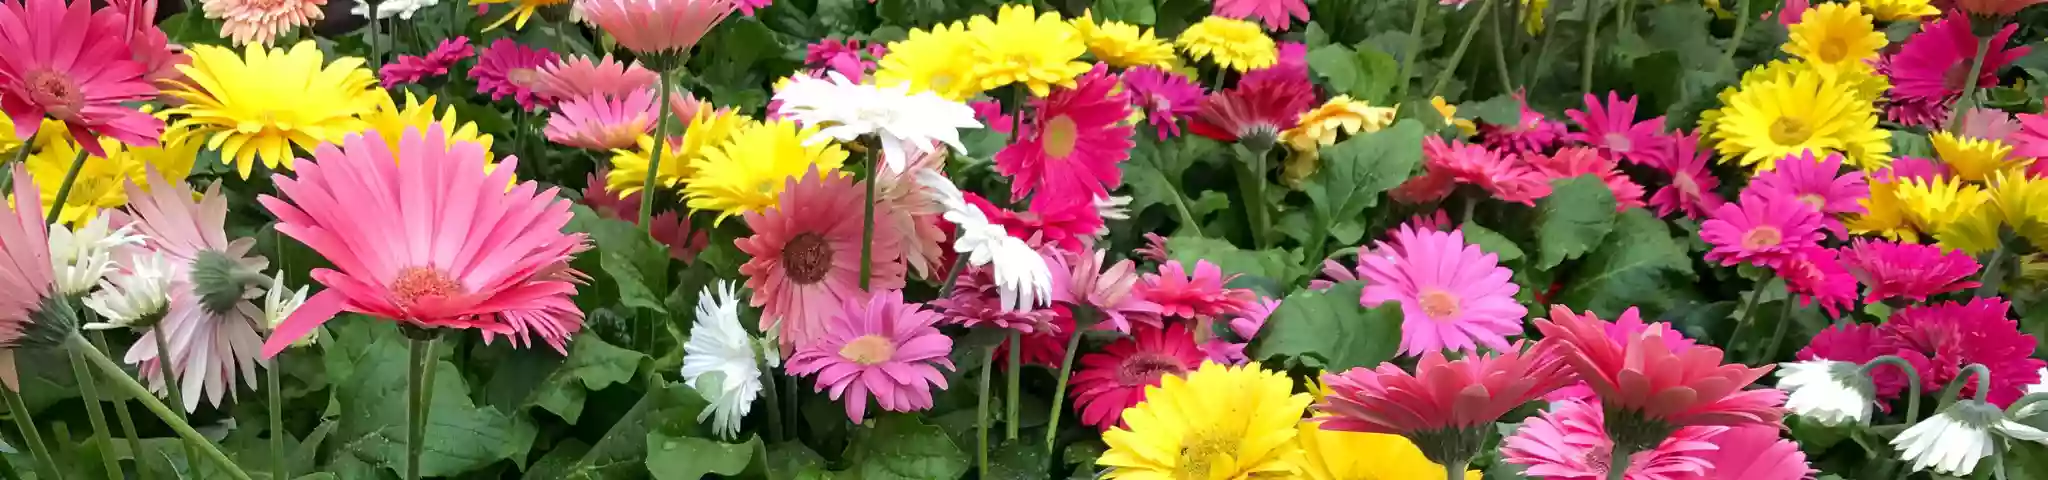 Gerbera Daisy Flowers In garden